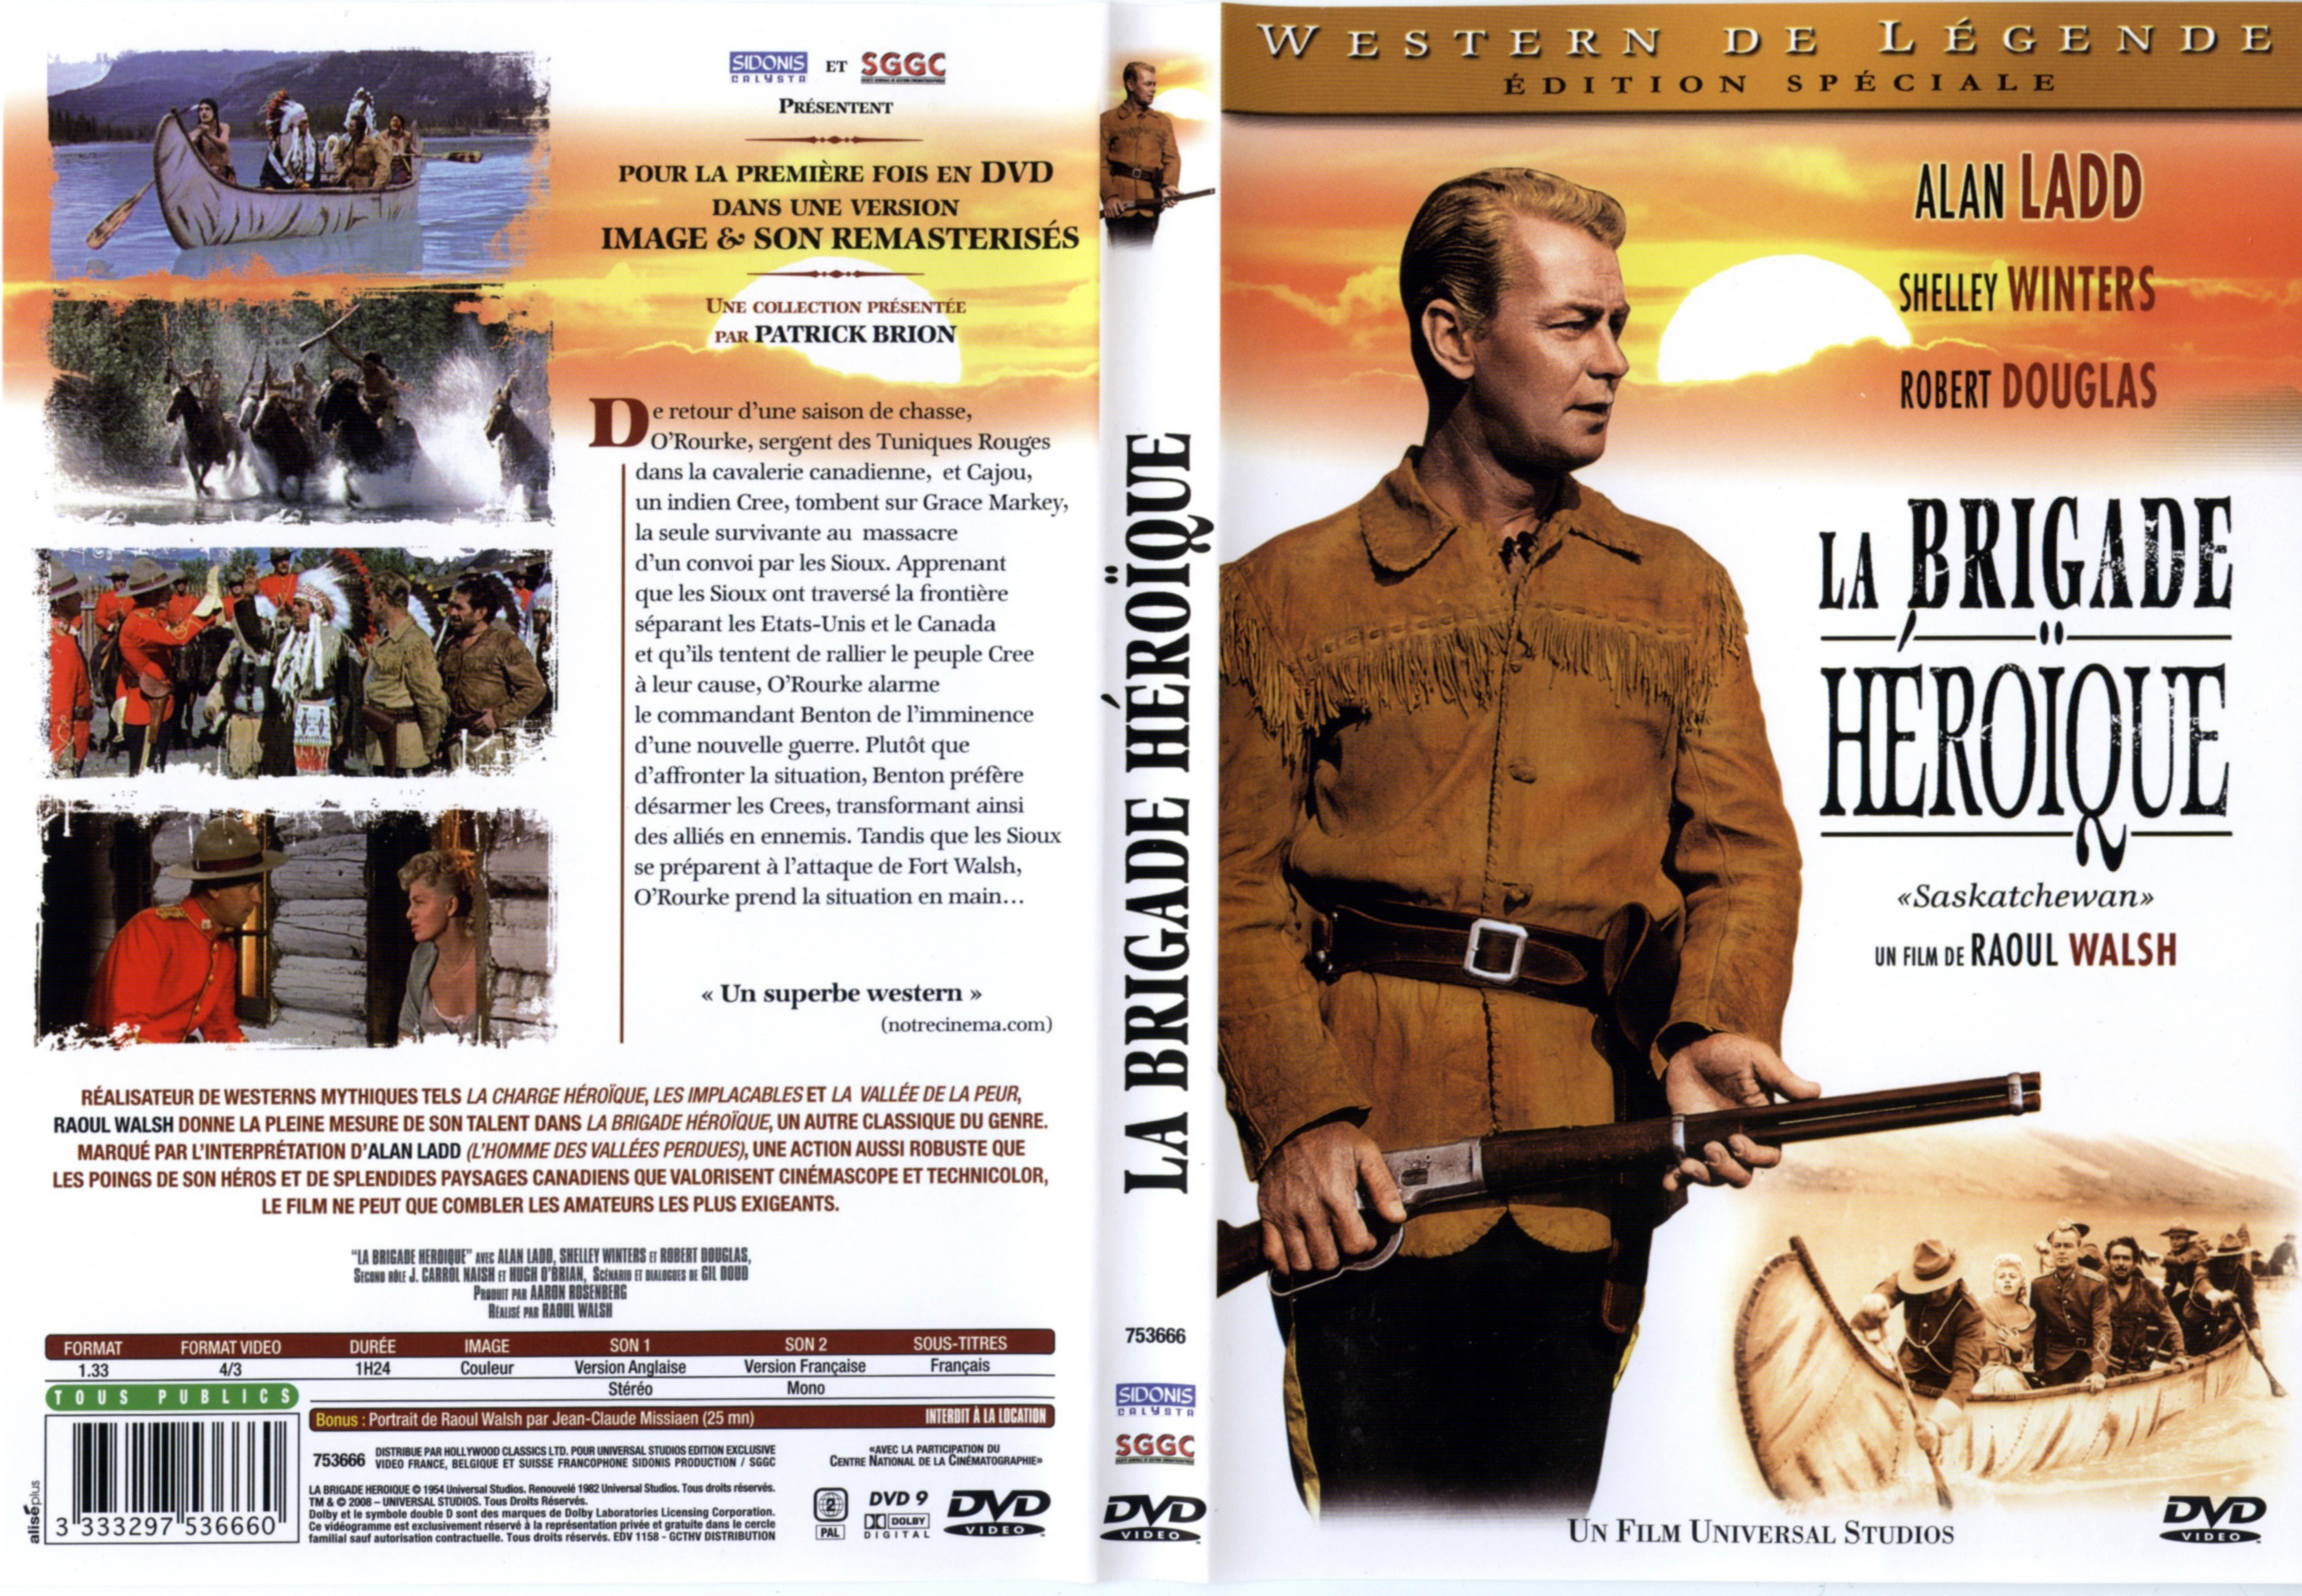 Jaquette DVD La brigade heroique